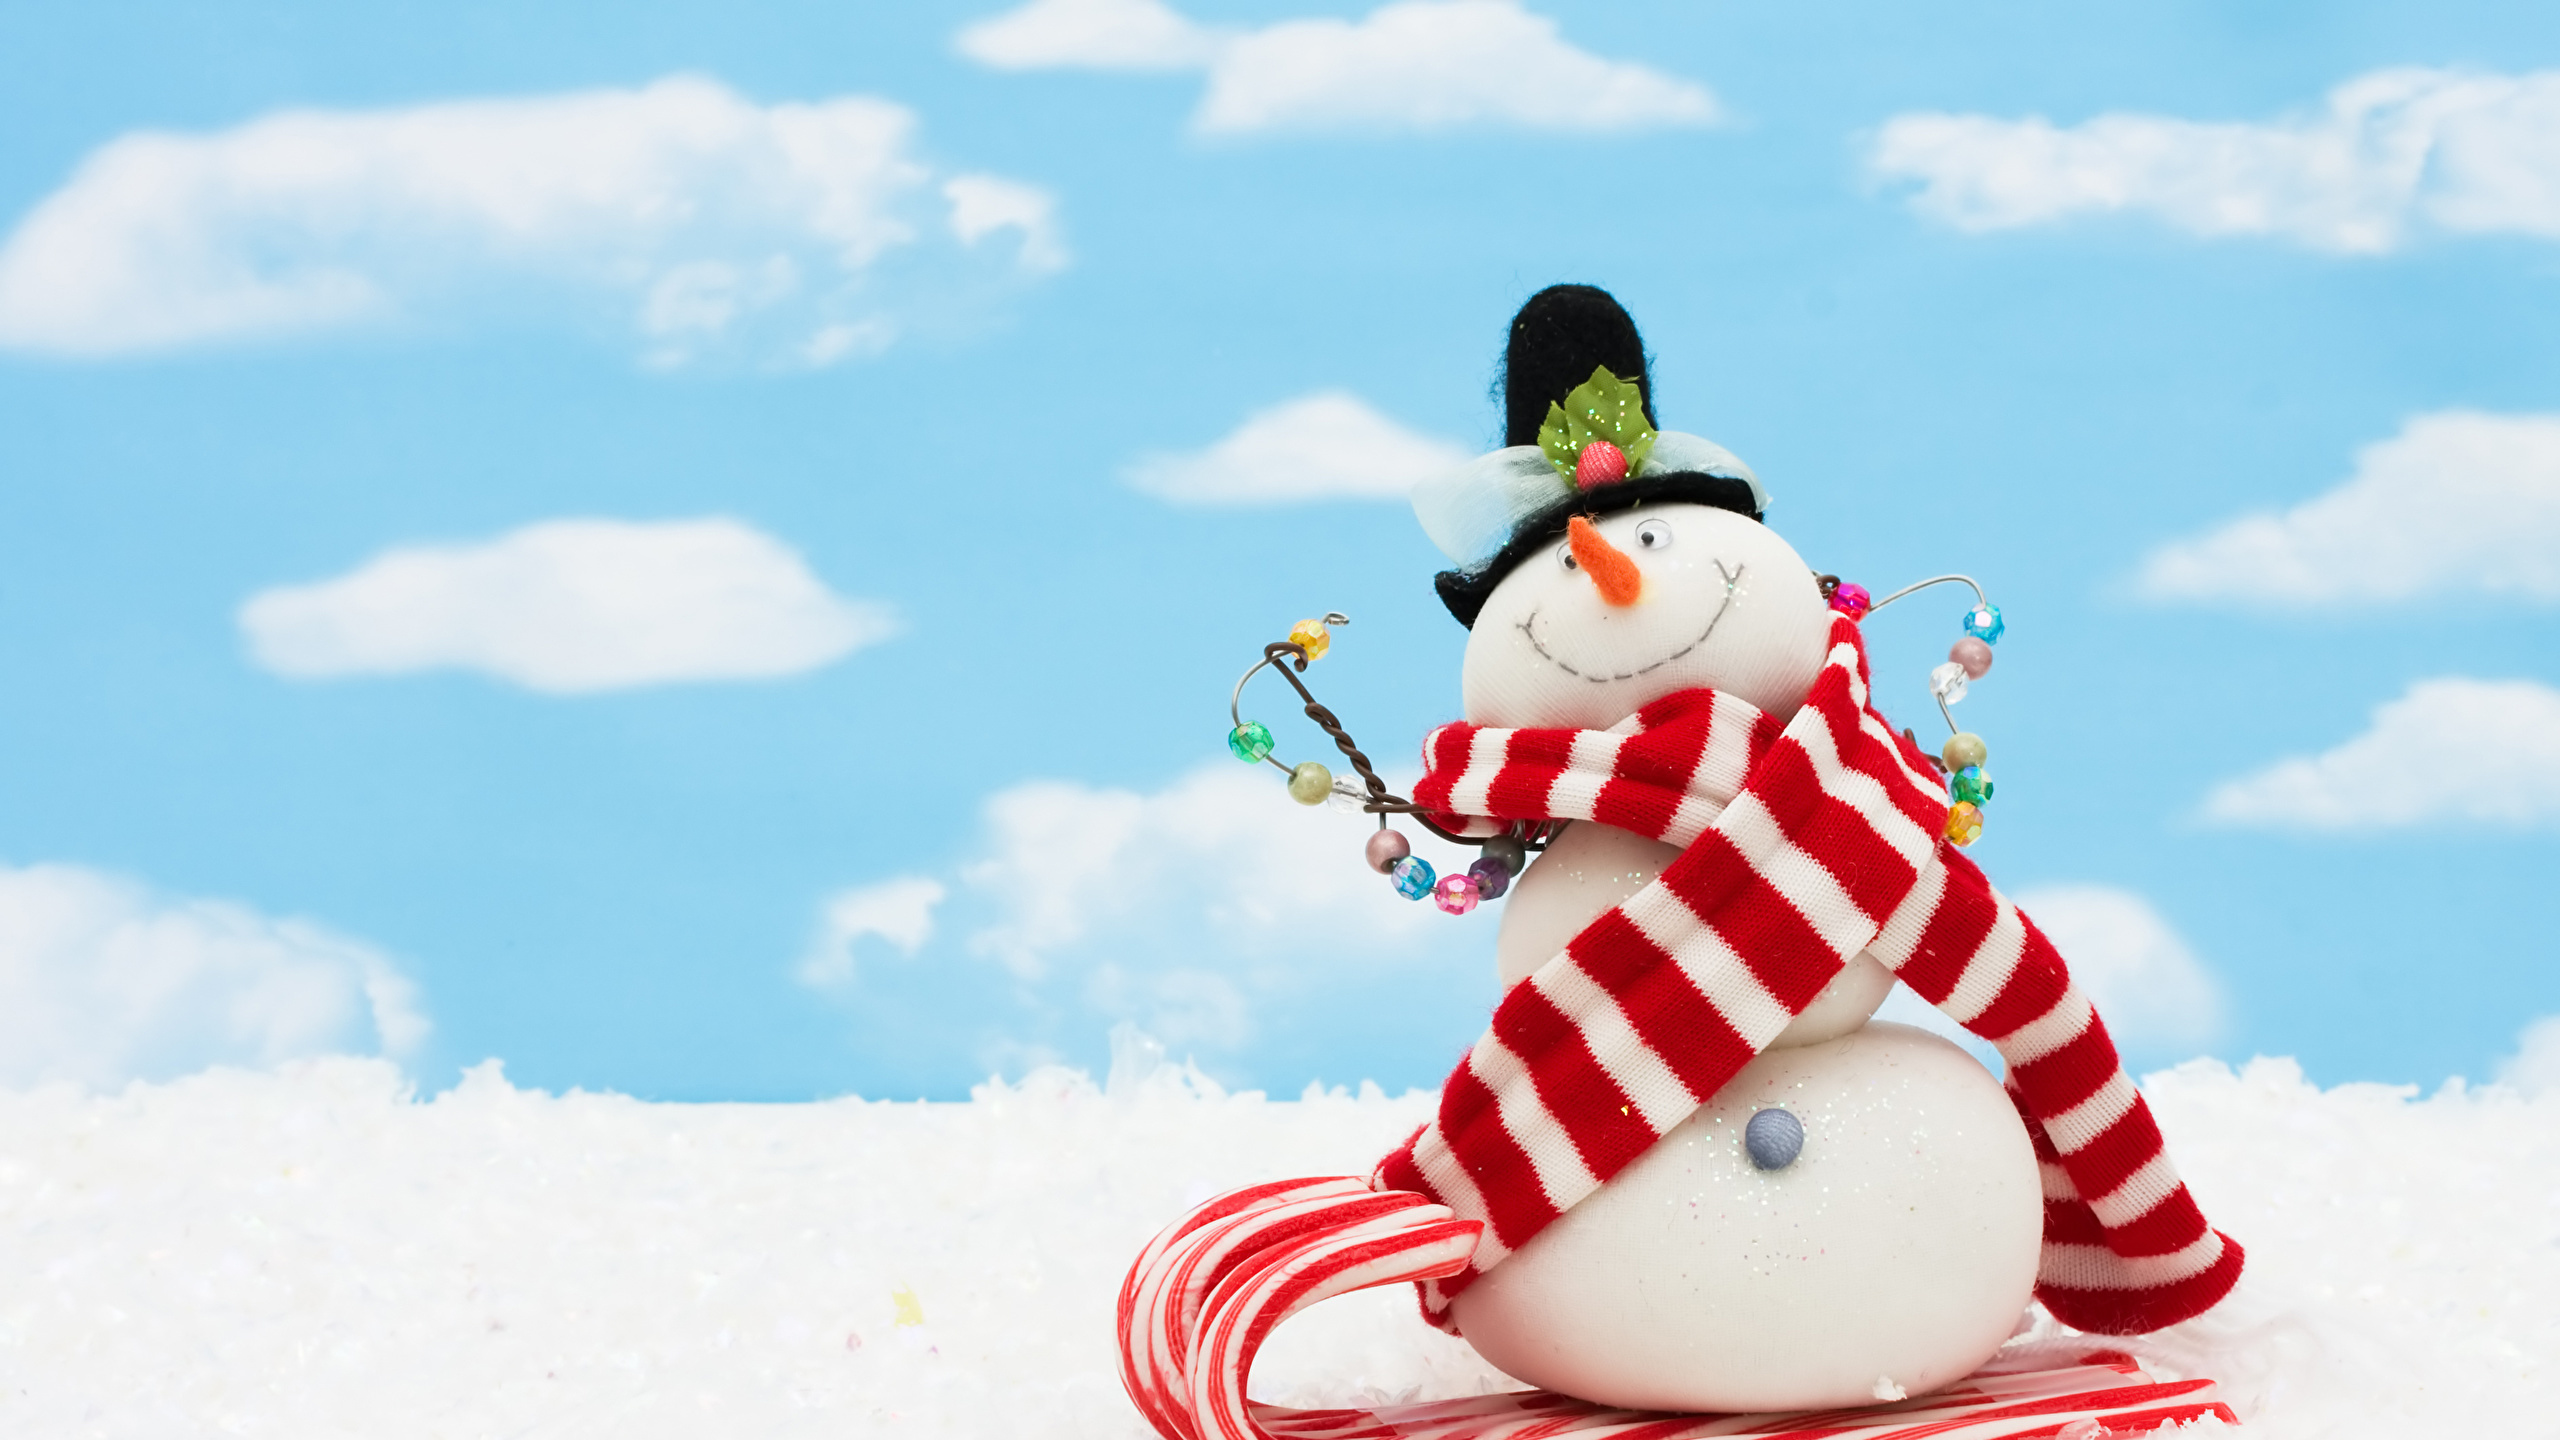 雪人, 圣诞节那天, 圣诞节, 冬天, 股票的插图 壁纸 2560x1440 允许